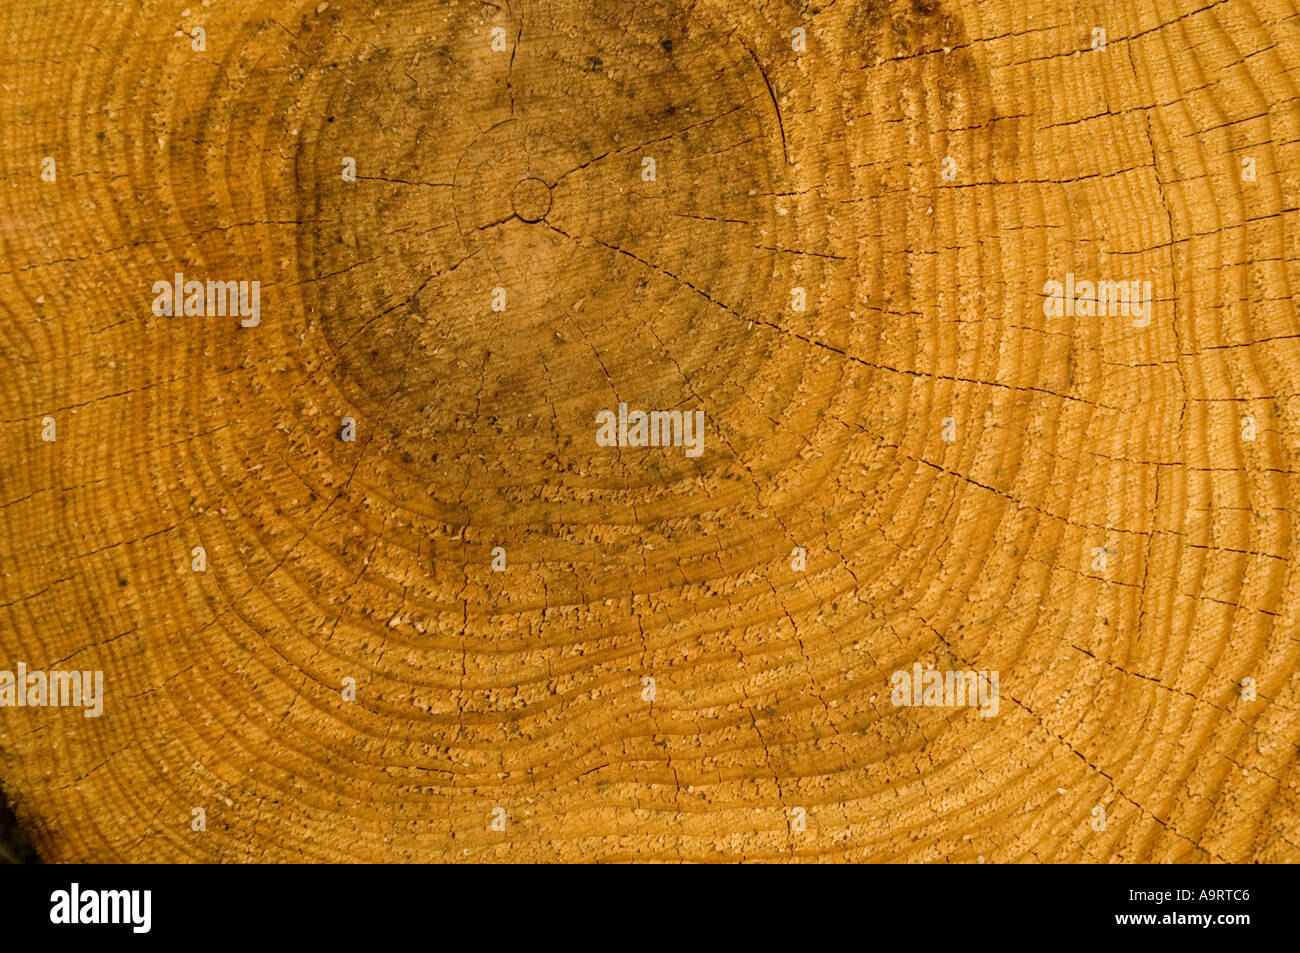 Les anneaux de croissance de tree trunk Banque D'Images